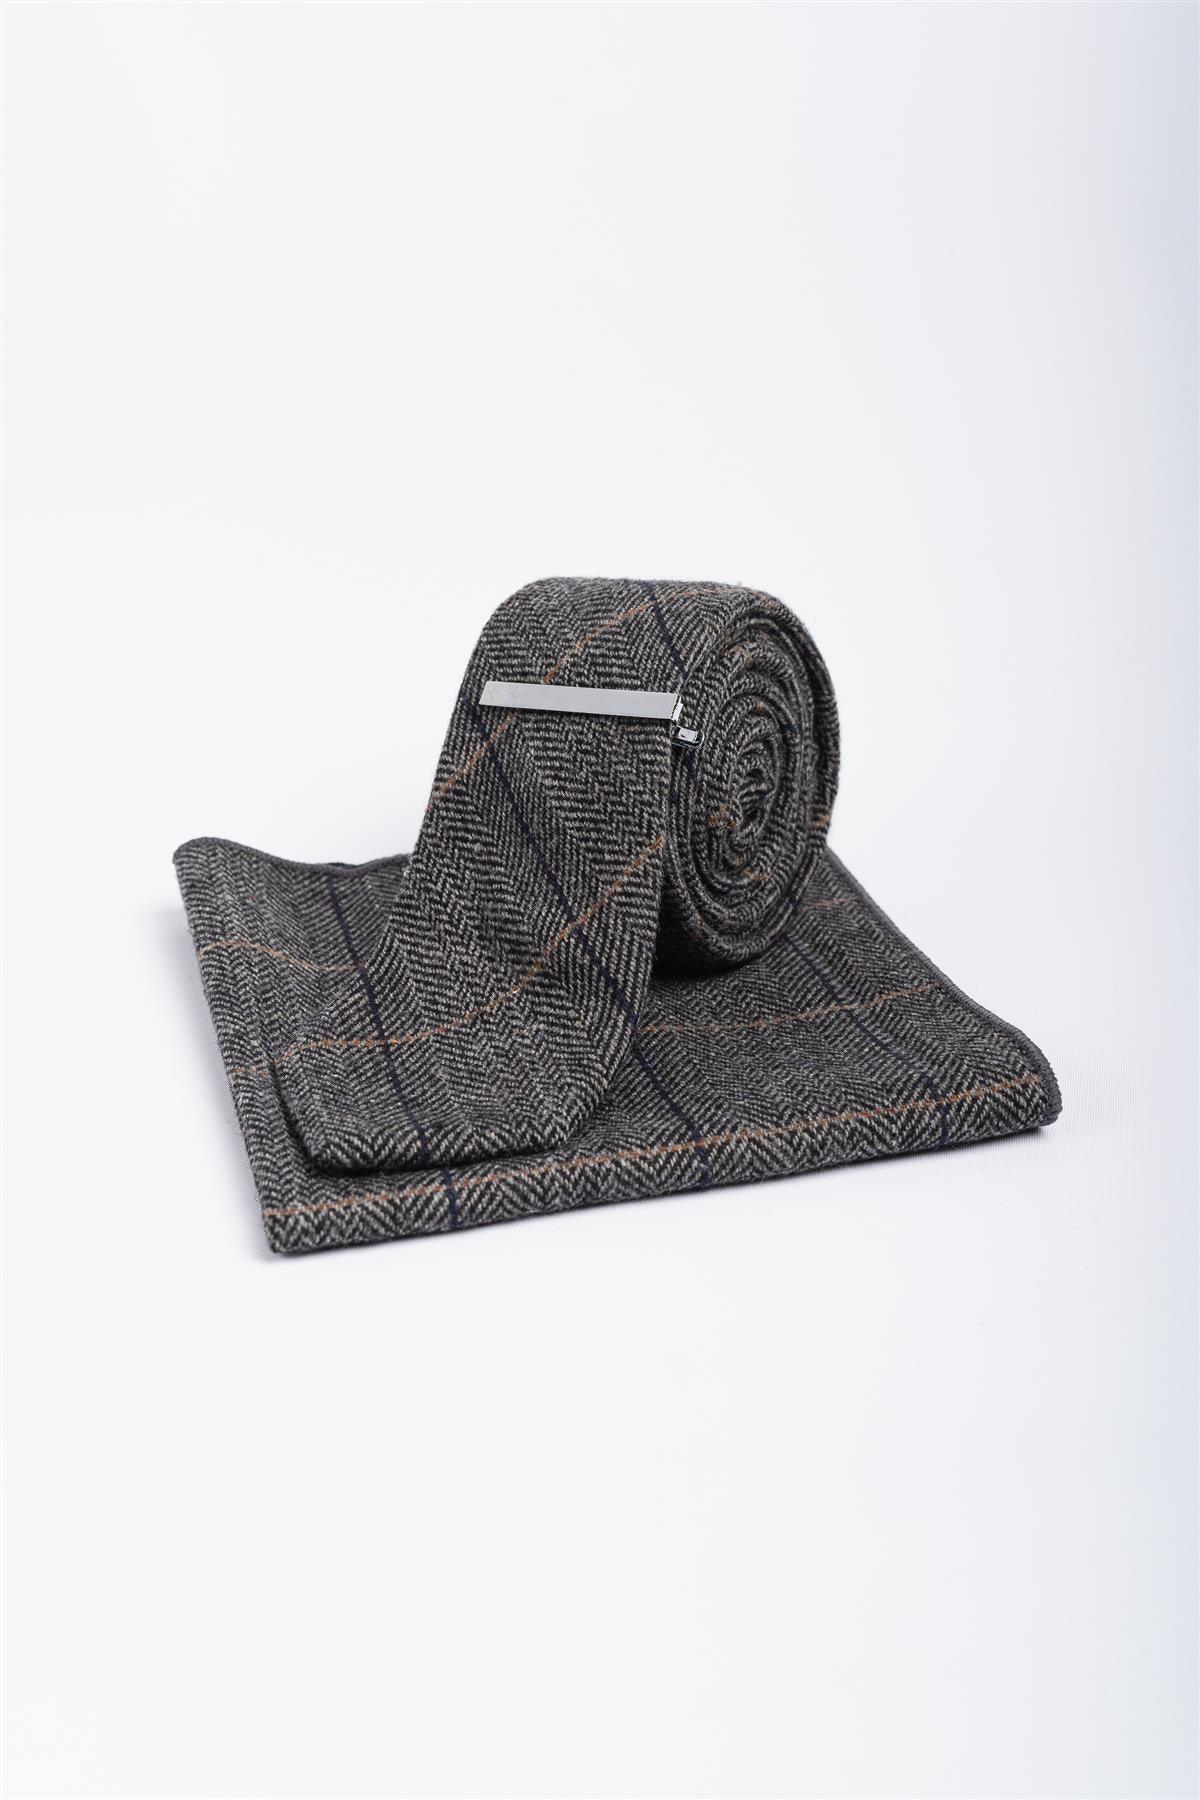 albert grey tweed tie set